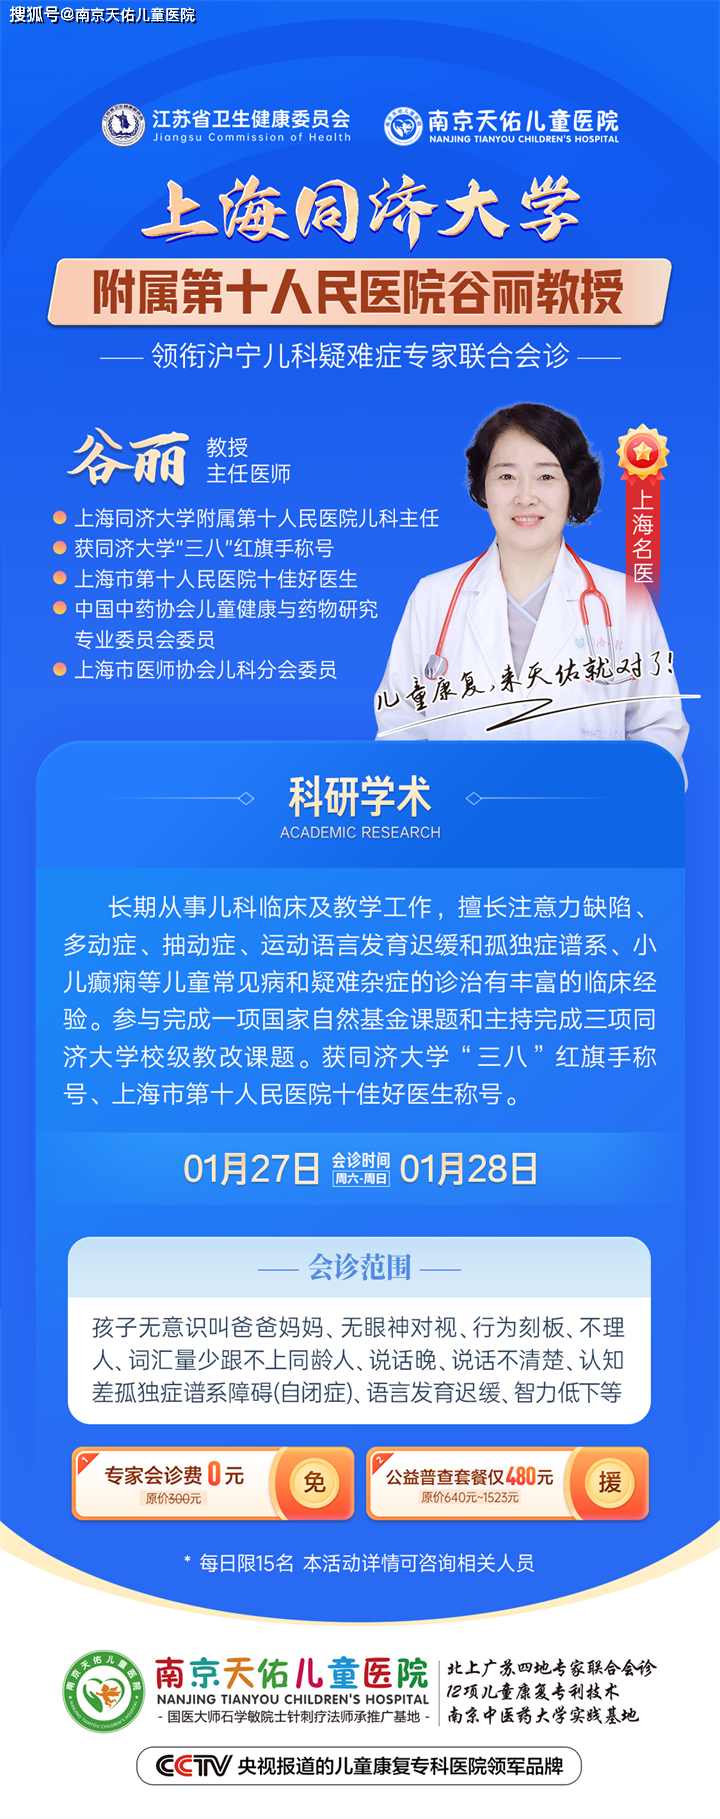 1月27-28日南京天佑儿童医院特邀上海知名的儿科教授谷丽教授来宁会诊